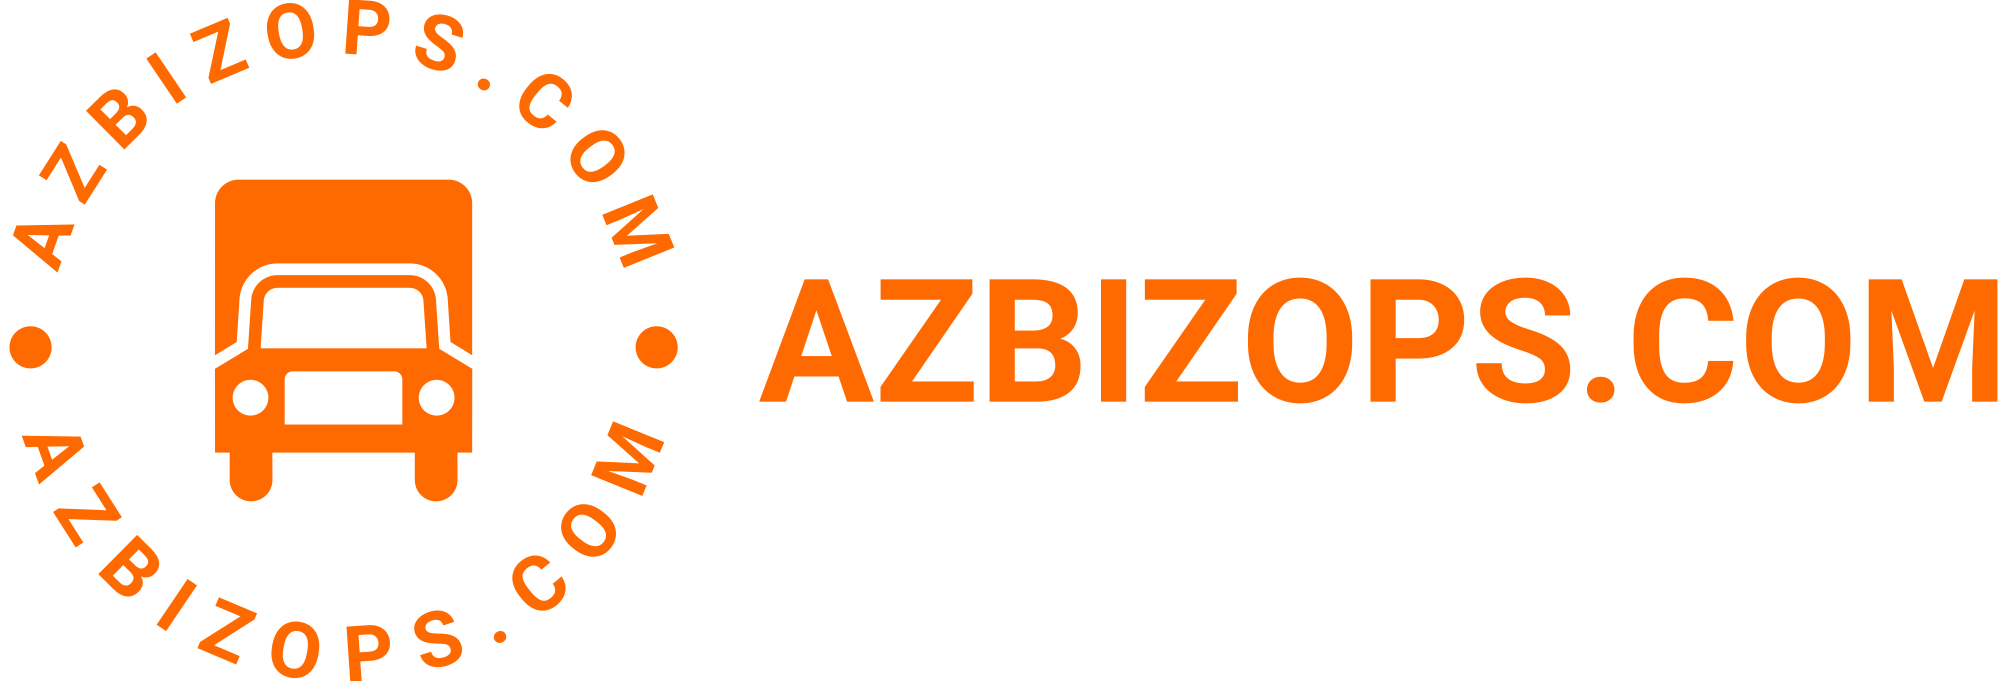 azbizopscom-high-resolution-logo-color-on-transparent-background-3